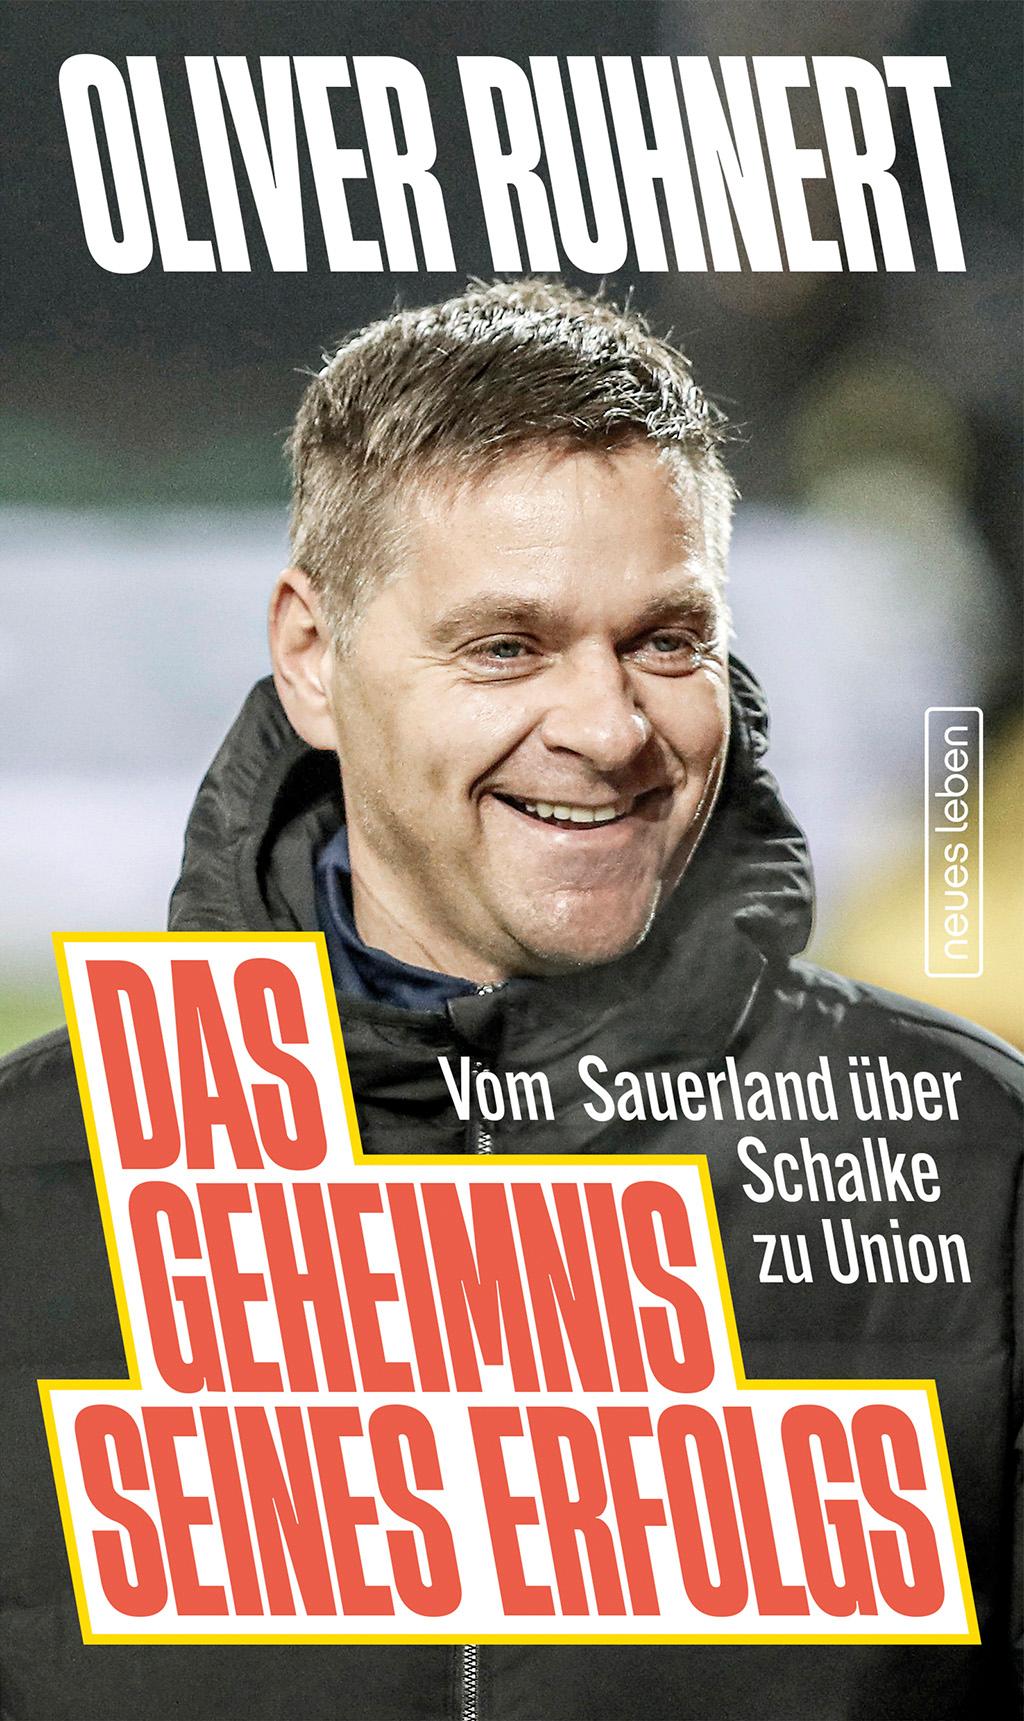 Das Geheimnis seines Erfolgs Vom Sauerland über Schalke zu Union